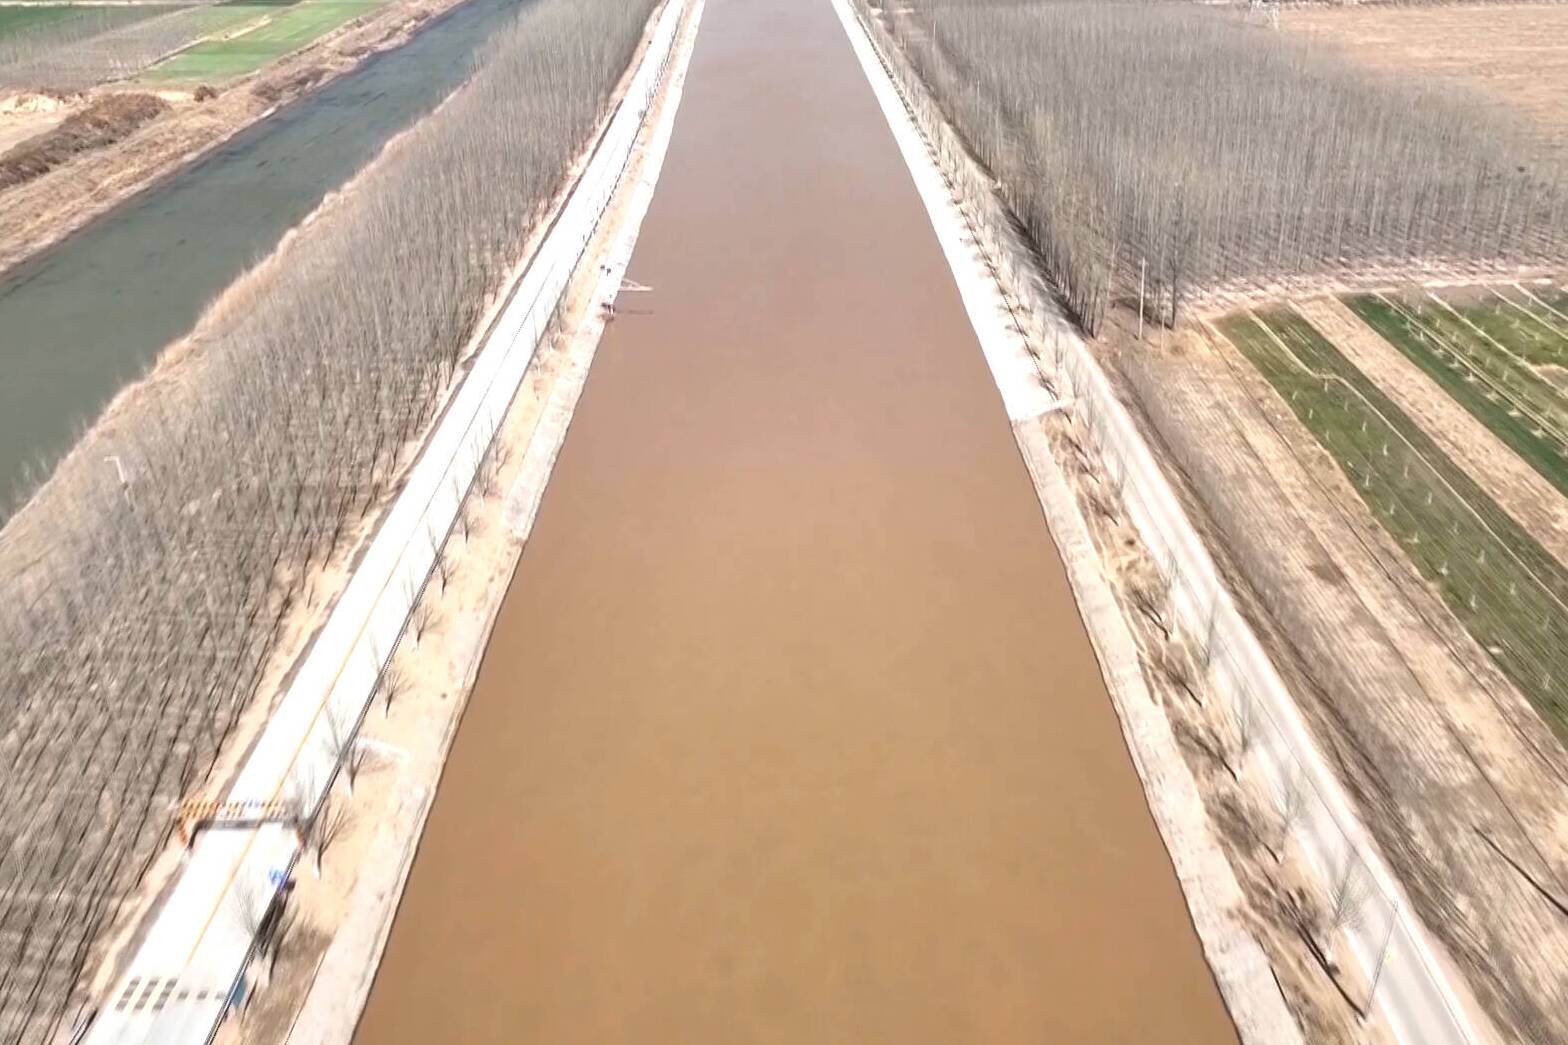 德州市灌区改造项目获1.98亿元资金支持 将极大提升灌区供水能力